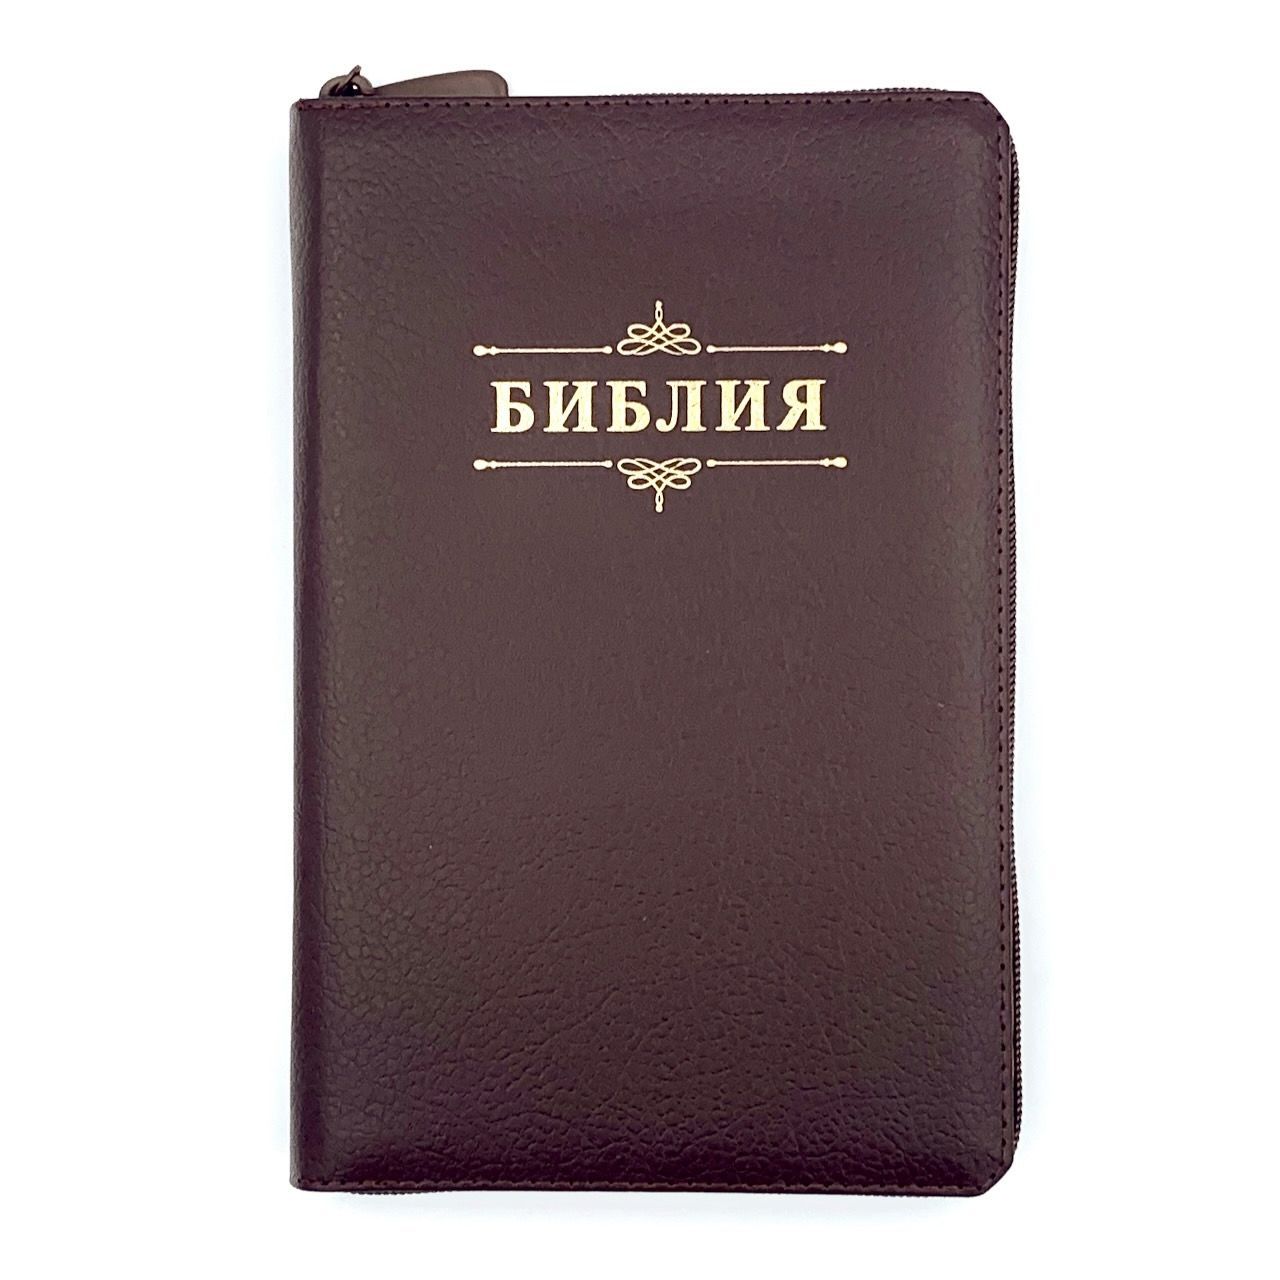 Библия 055z код 23055-25 надпись "Библия с венземлем", кожаный переплет на молнии, цвет коричневый пятнистый, средний формат, 143*220 м